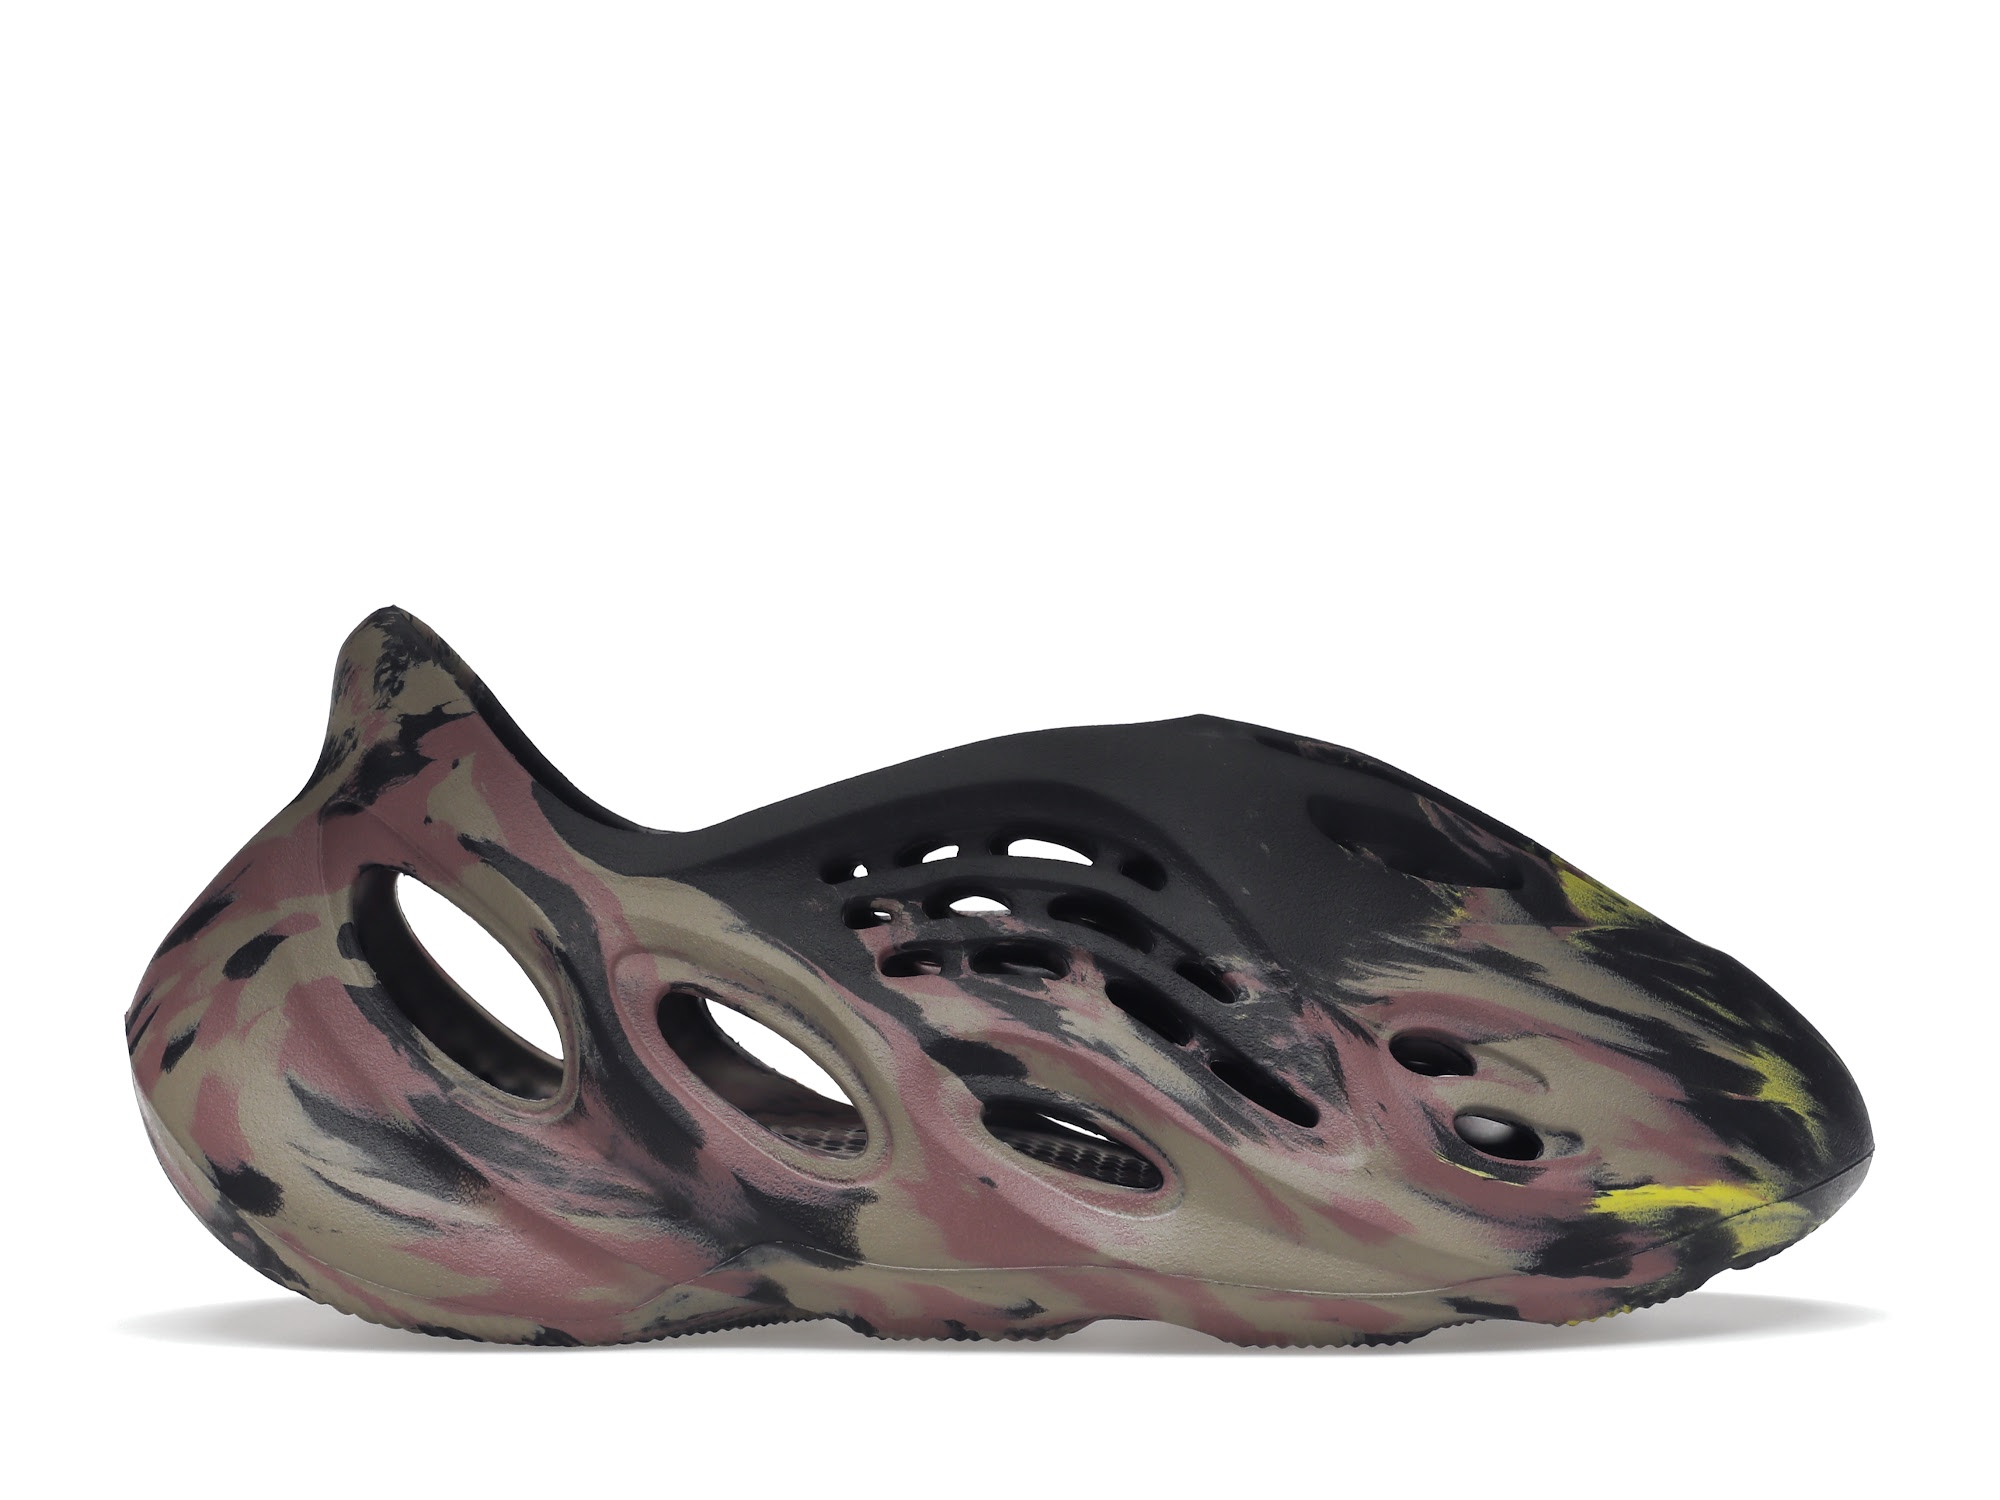 adidas Yeezy Foam RNR MX Carbon